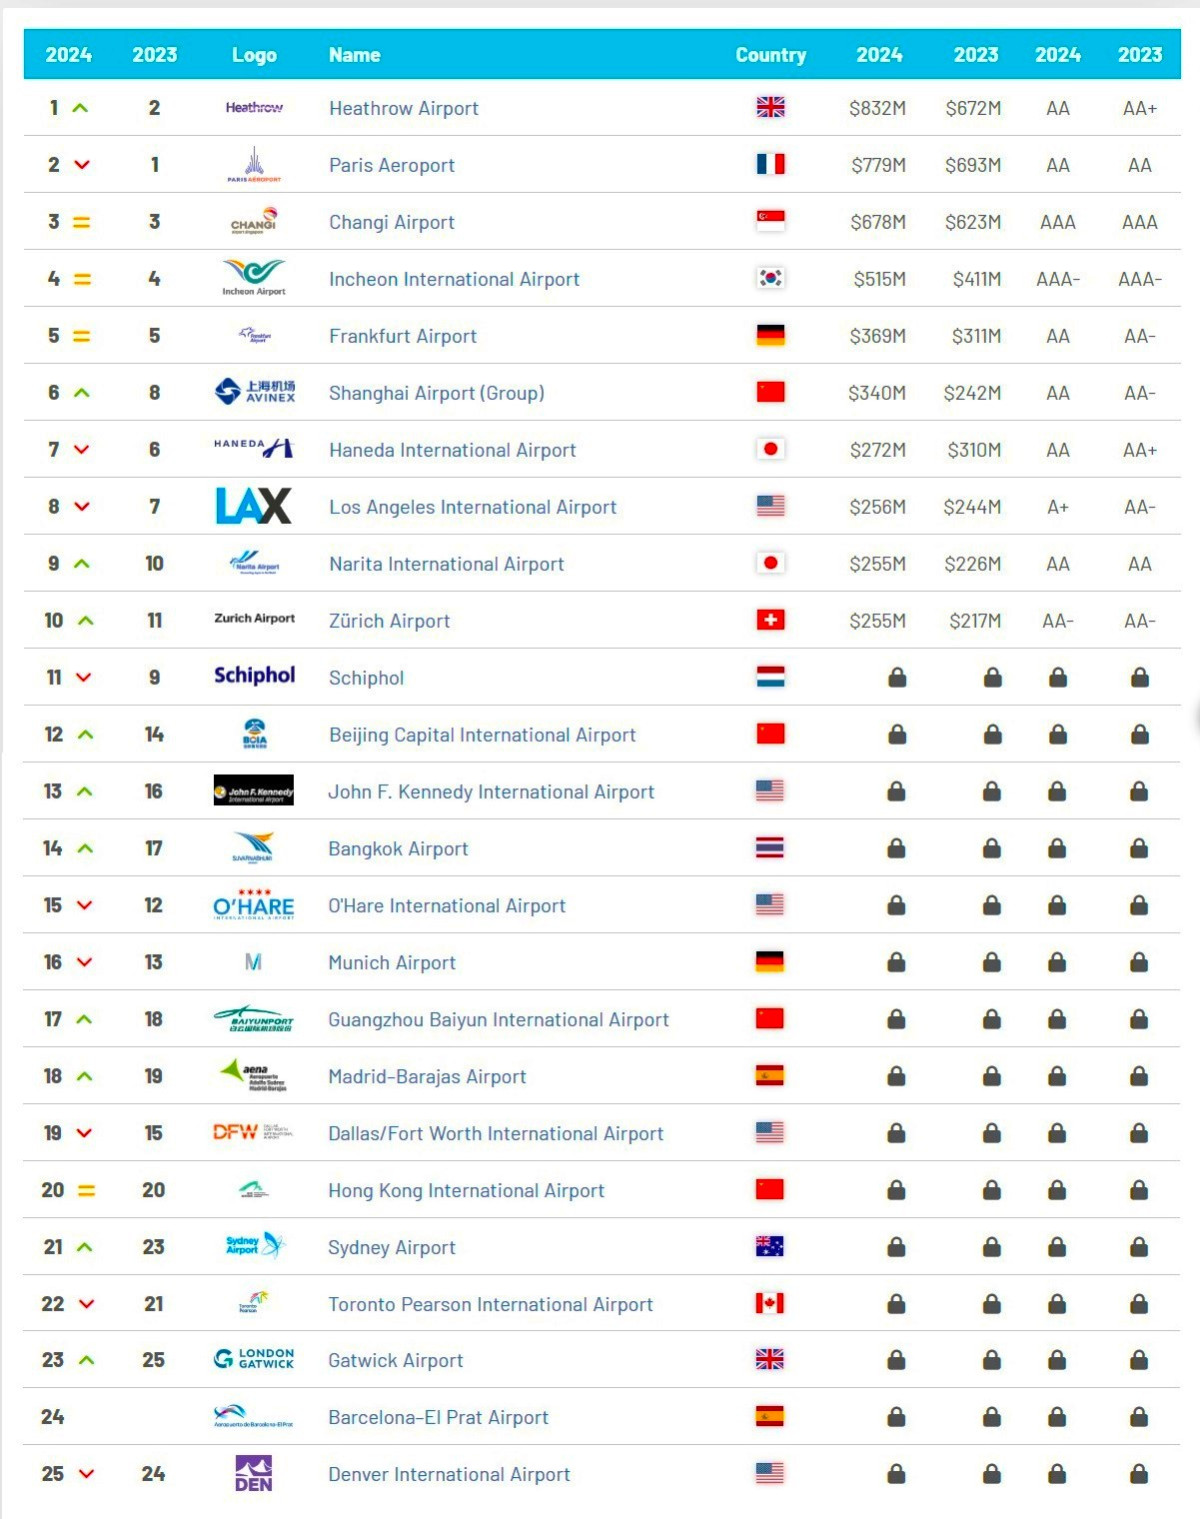 Aeropuertos españoles en el Top 25 con mayor valor de marca